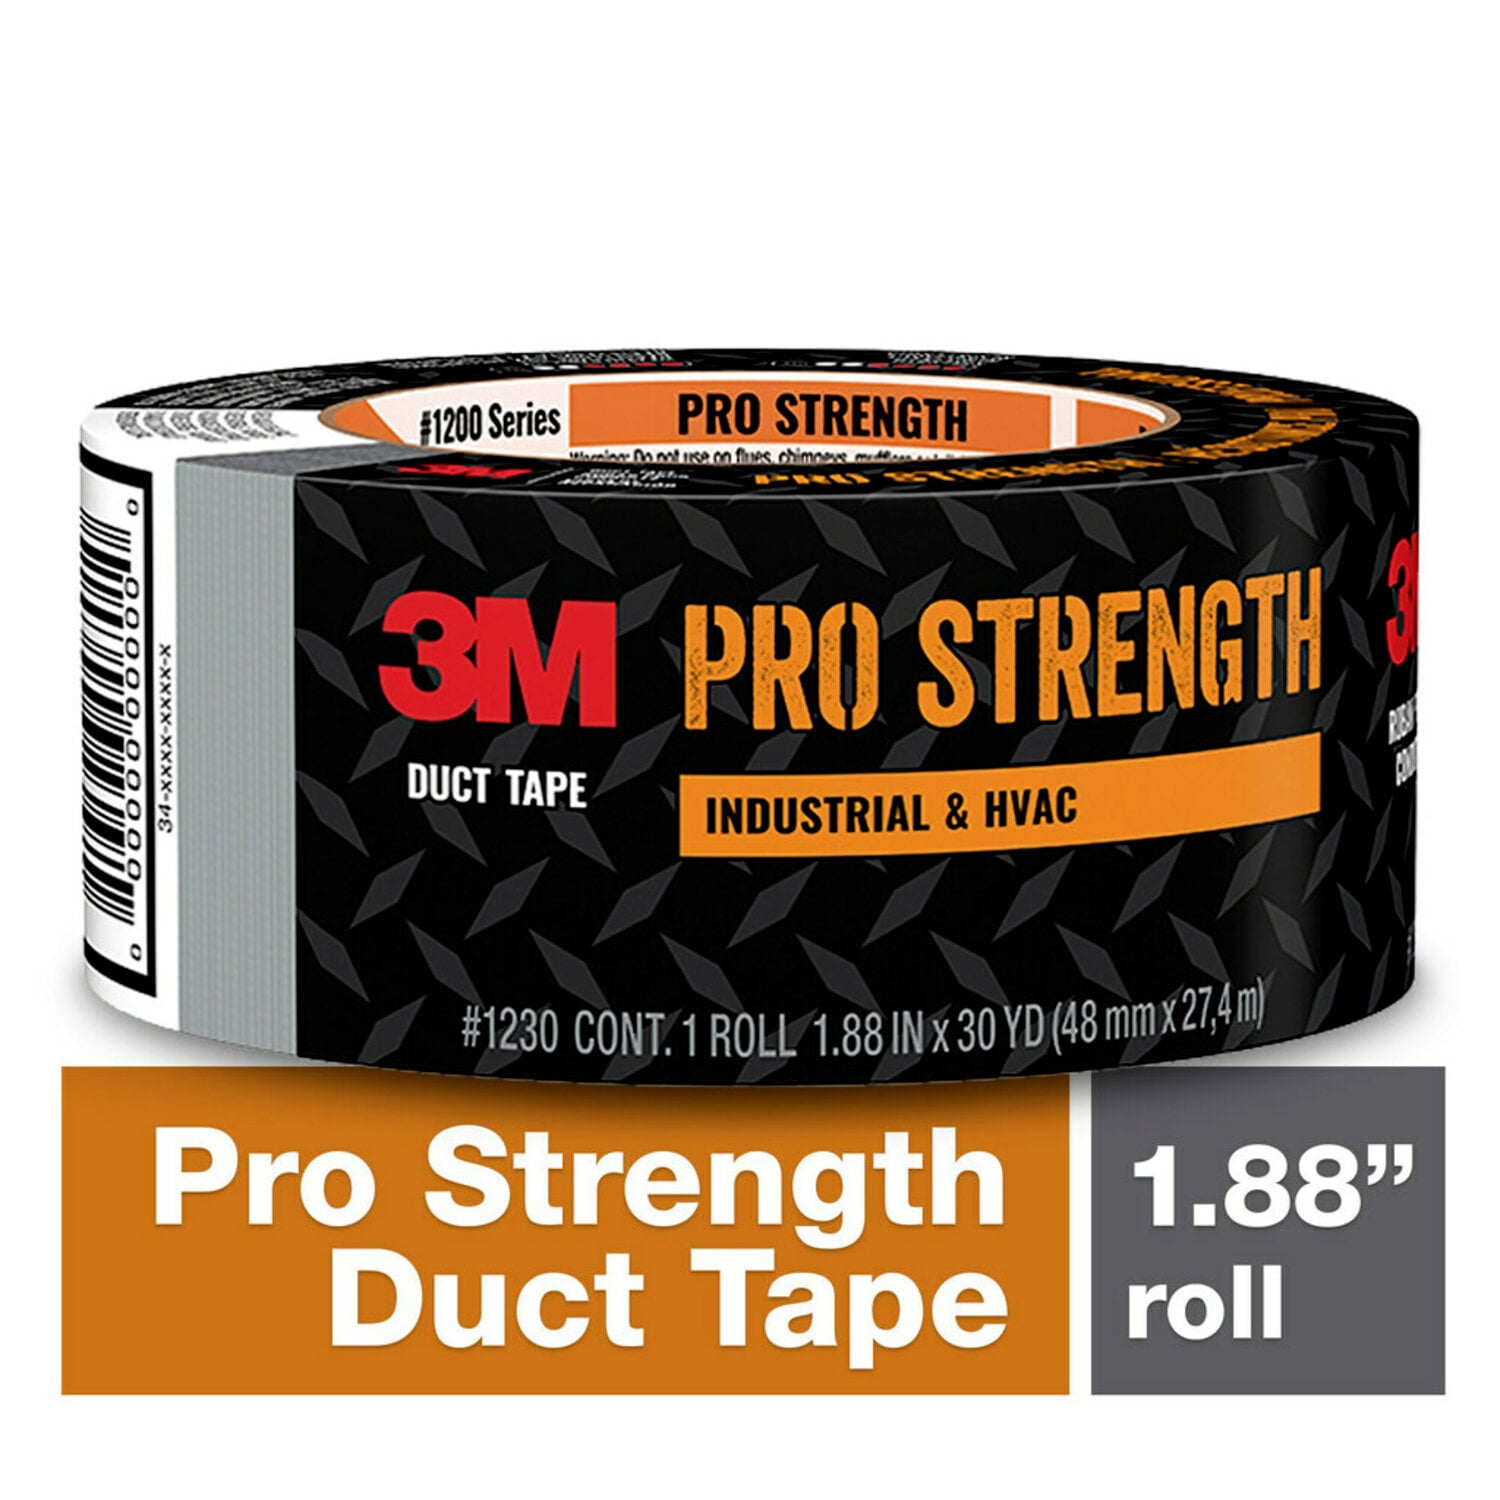 7100257872 - 3M Pro Strength Duct Tape 1230-C 1.88 in x 30 yd (48 mm x 27.4 m) 9 rls/cs